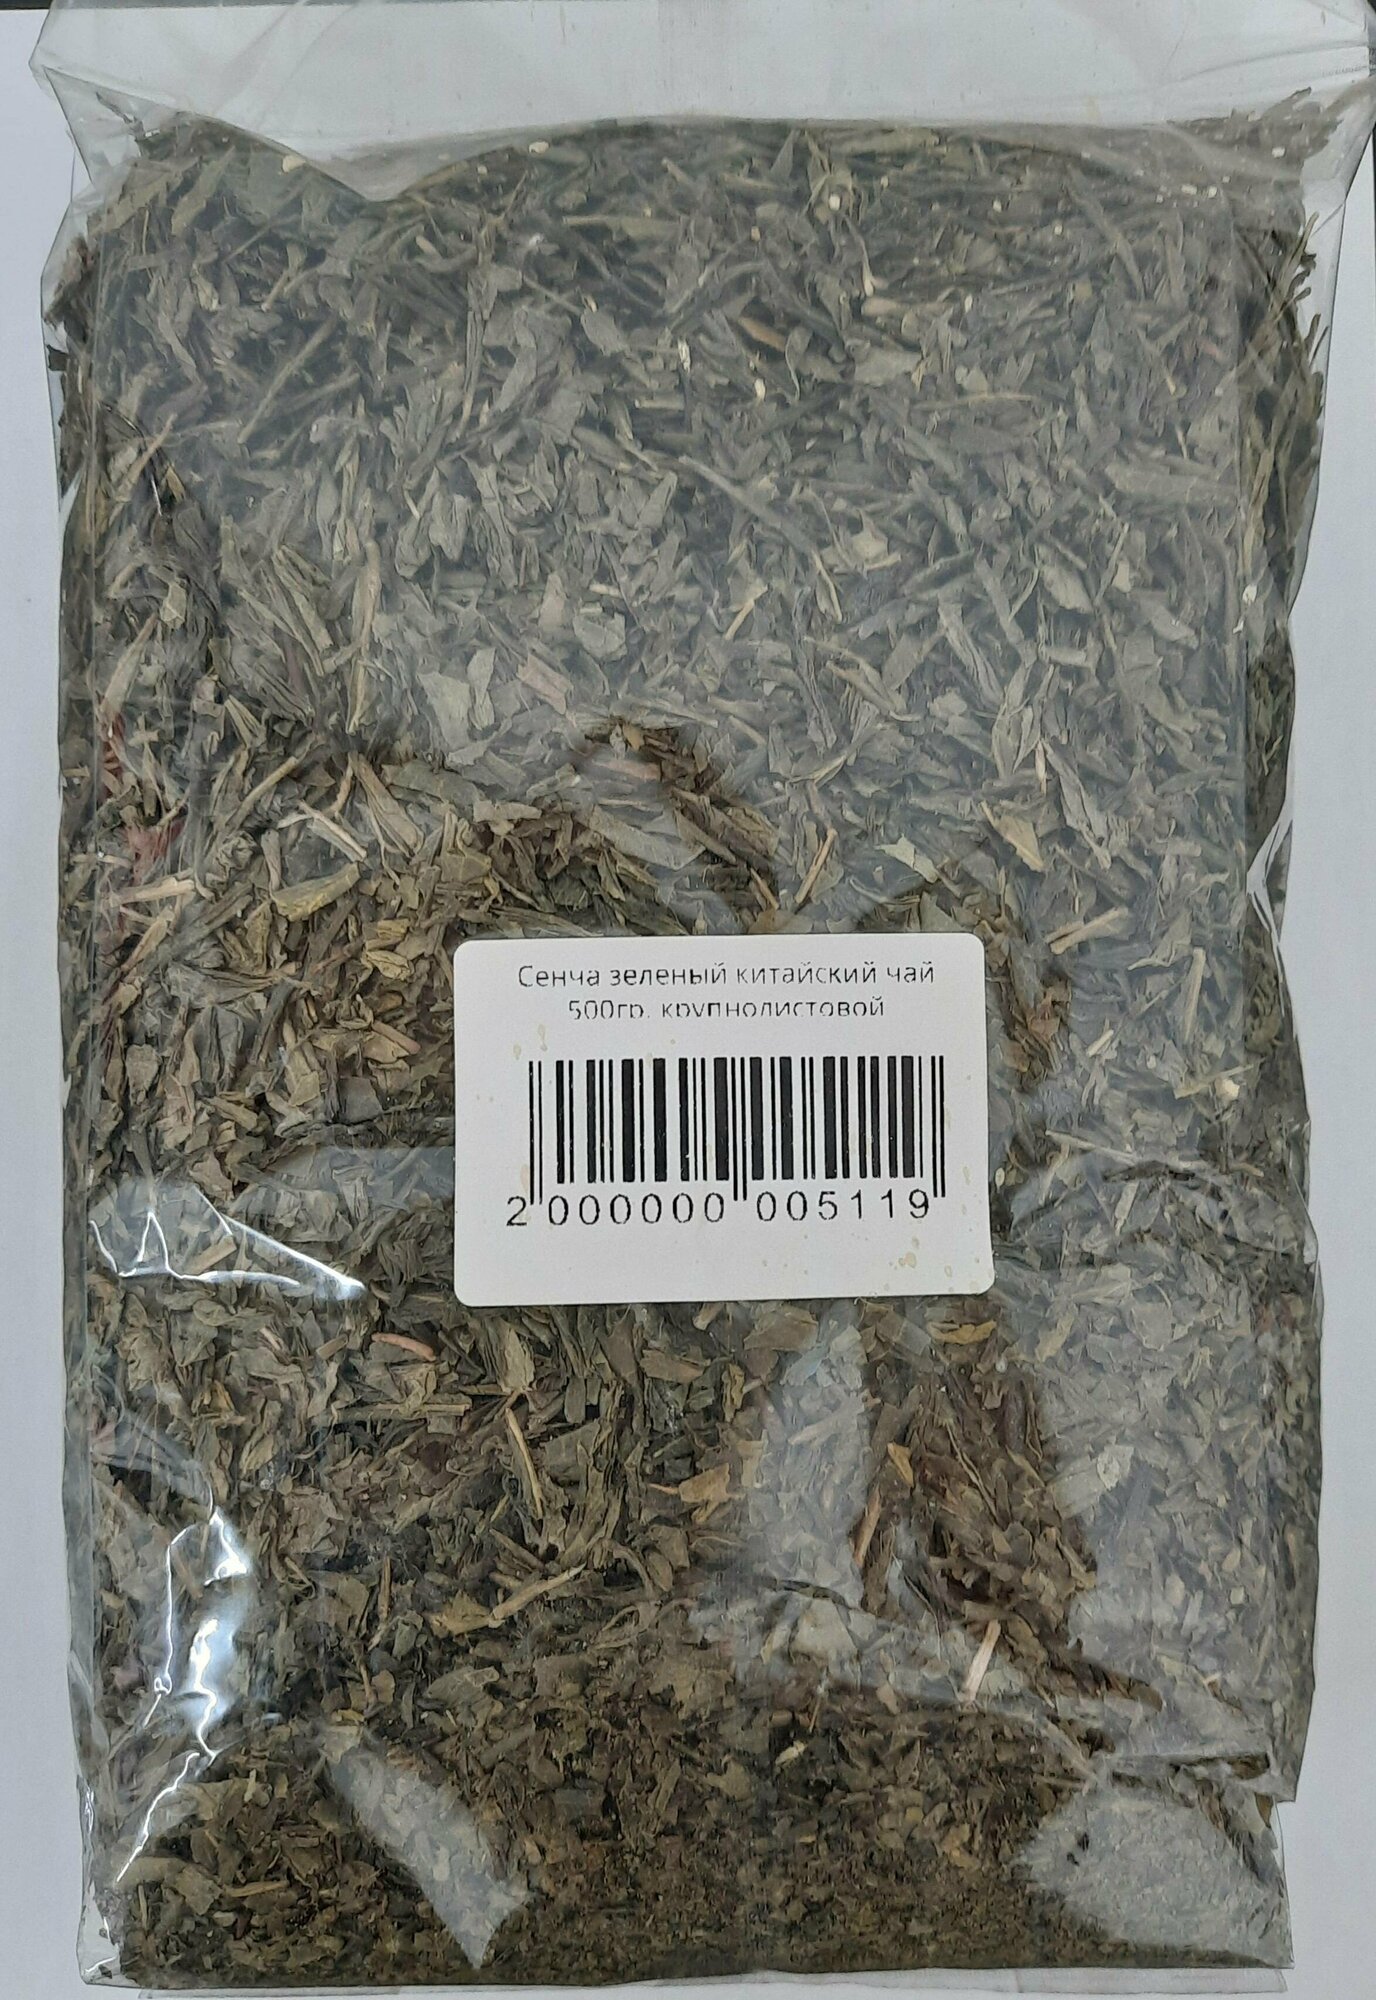 Сенча зеленый китайский чай 500гр, крупнолистовой